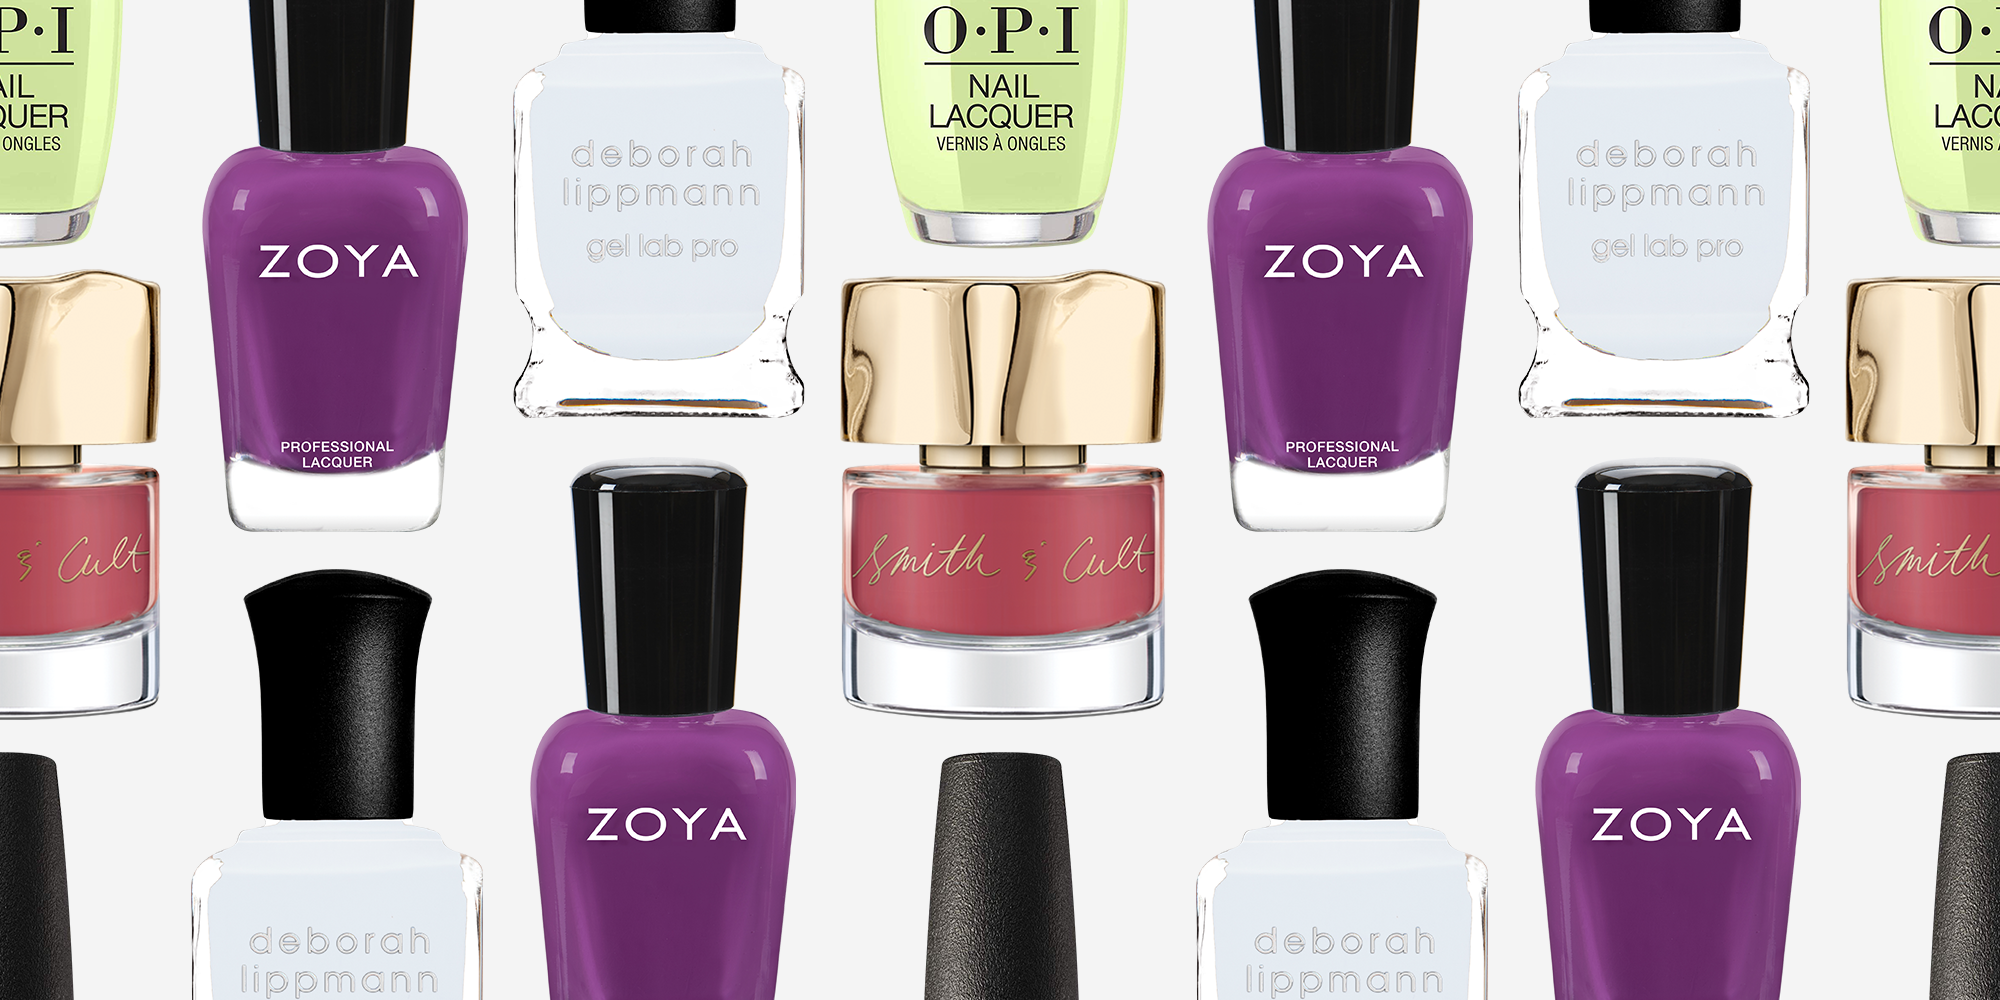 15 New Spring Nail Colors - Best Nail Polish Shades for ...